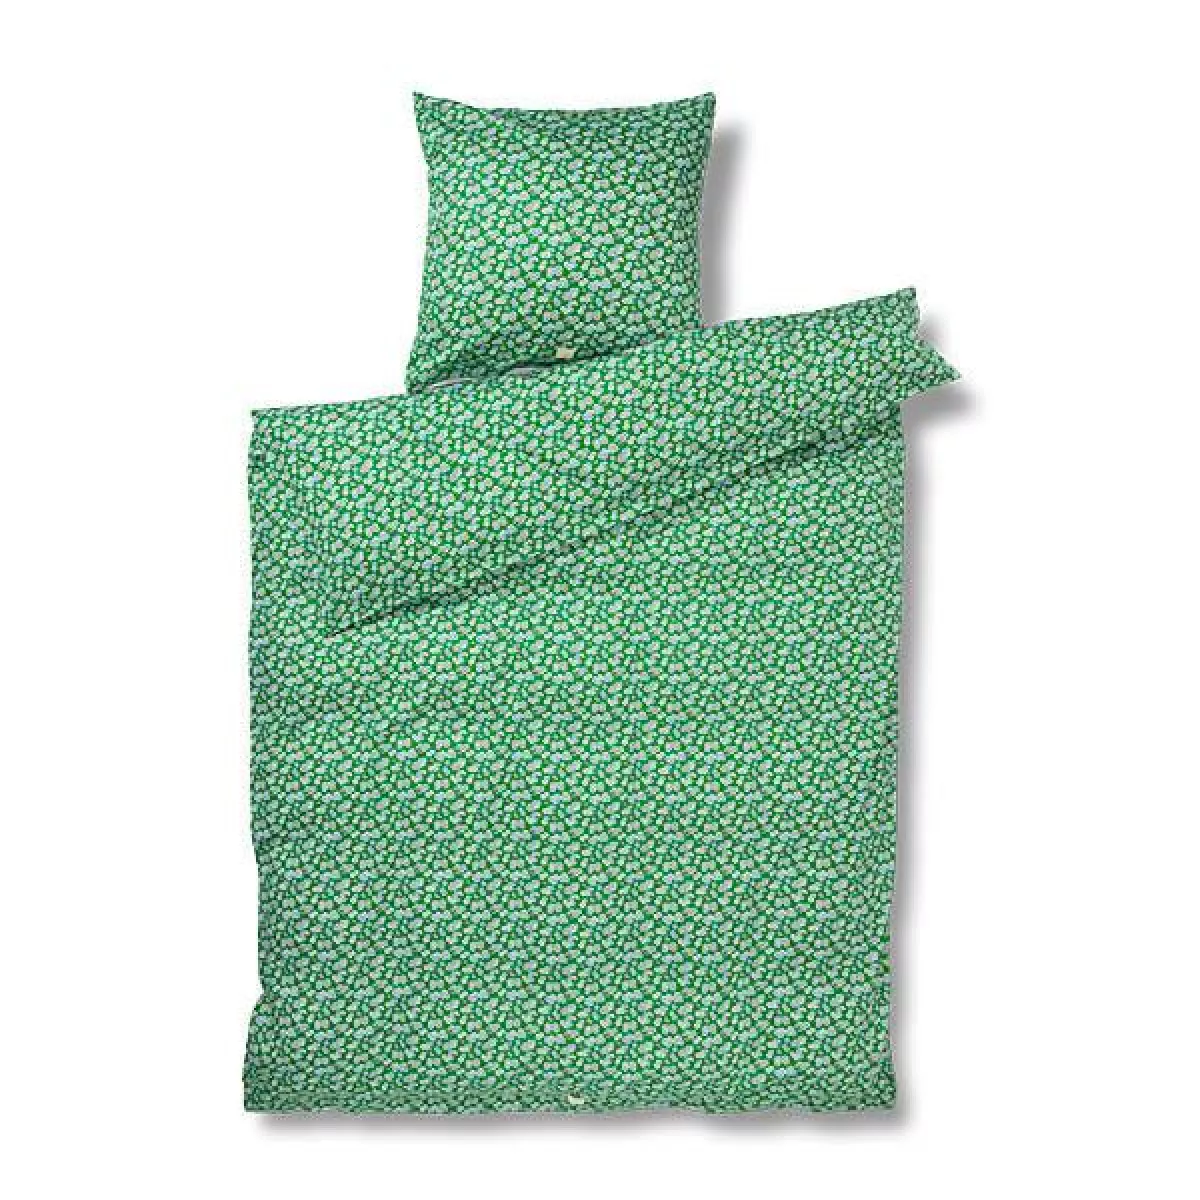 #1 - Juna Pleasantly sengetøj - Grøn - 140x200 cm